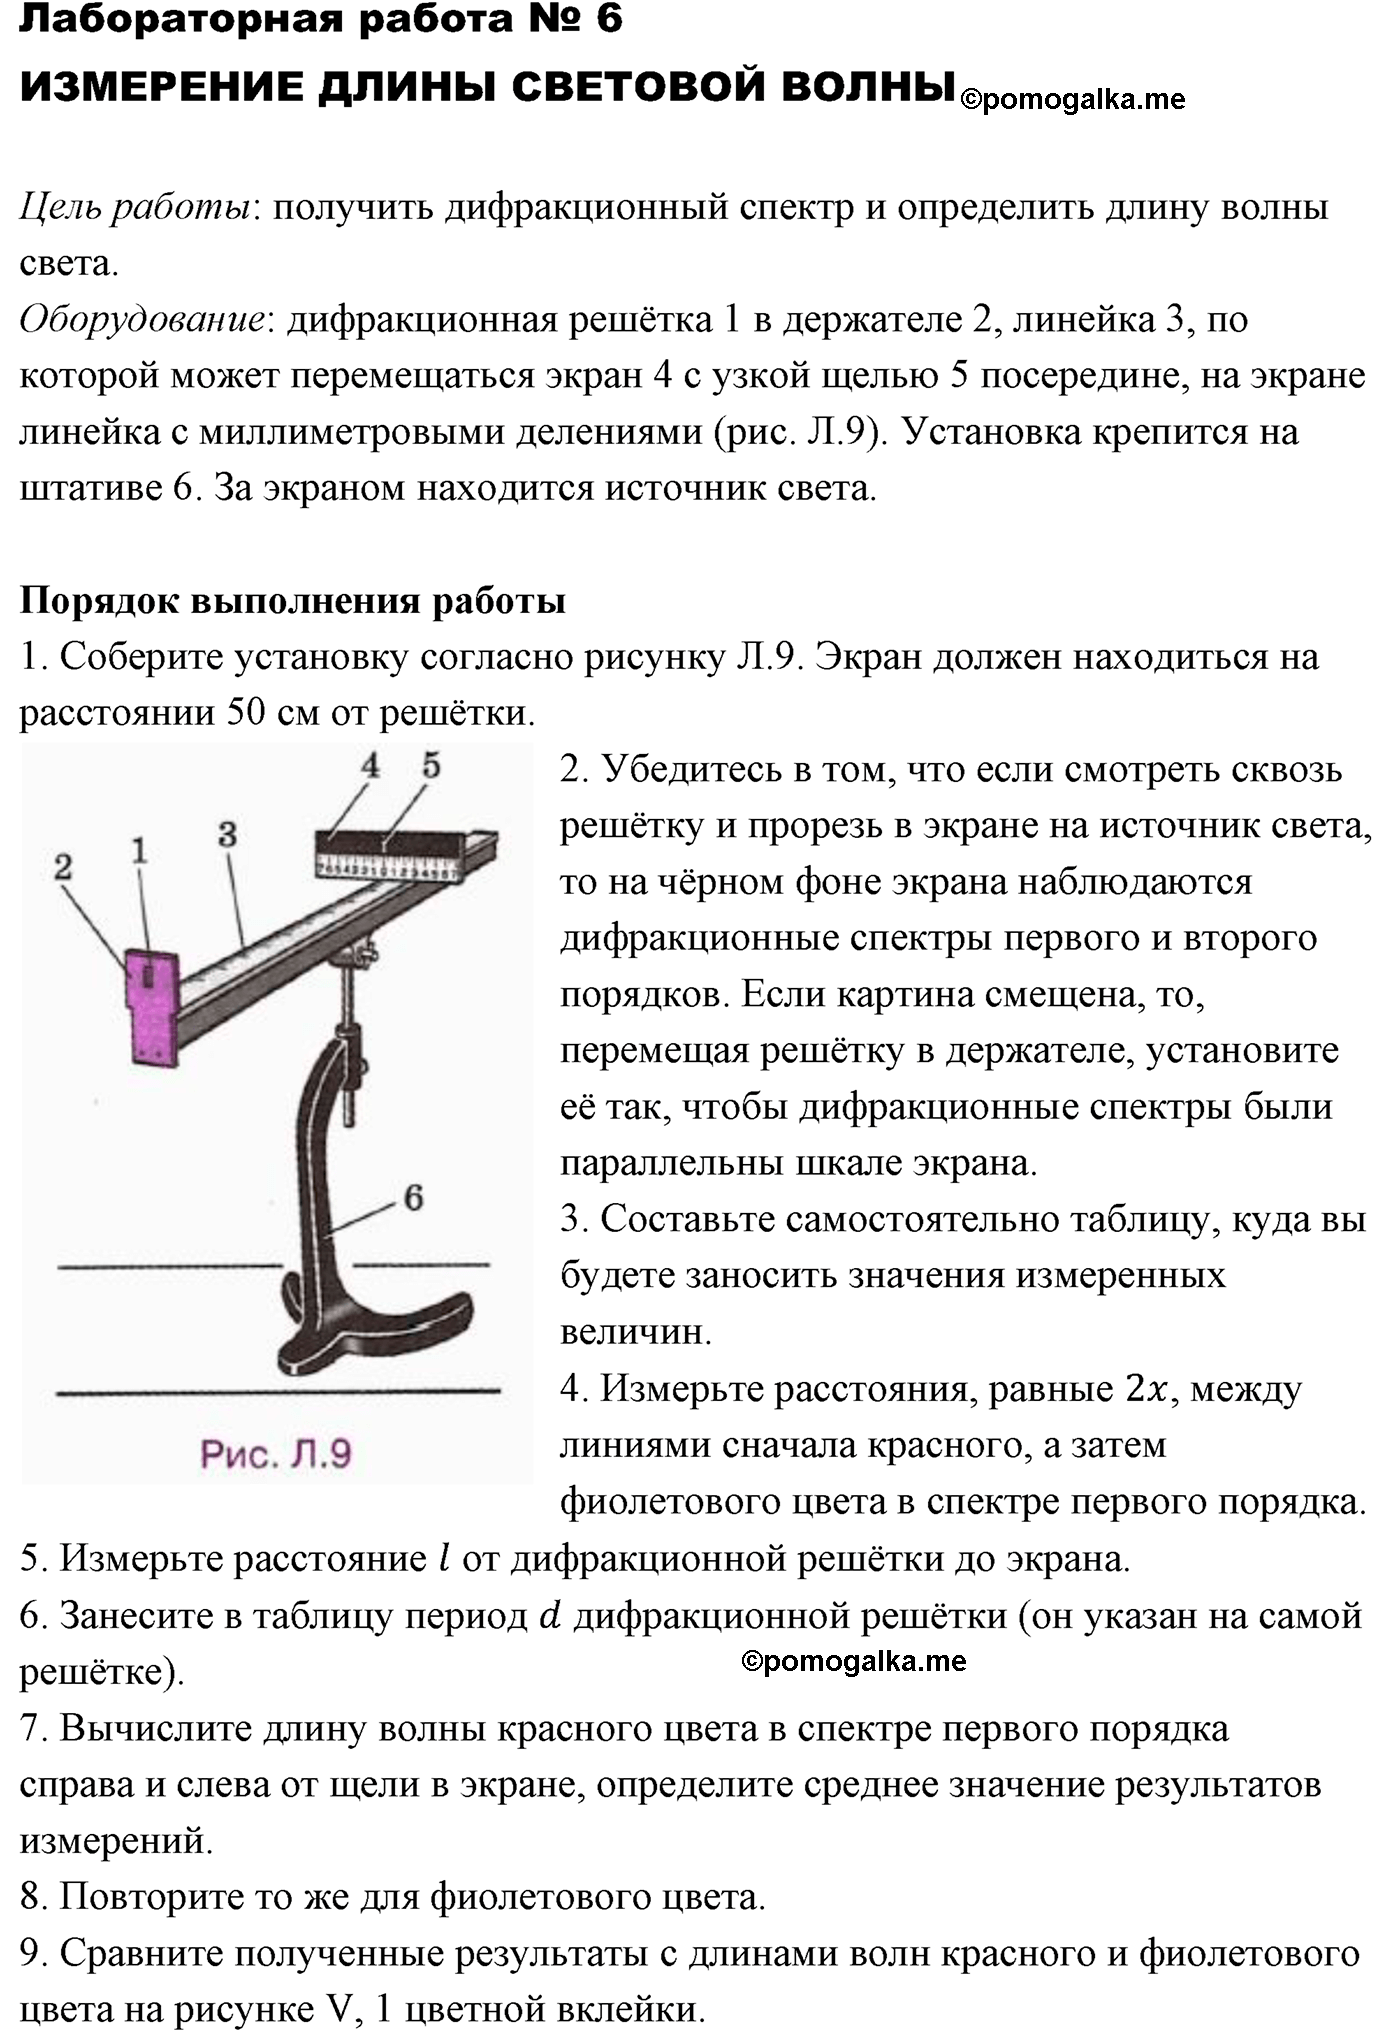 лабораторный опыт №6 физика 11 класс Мякишев